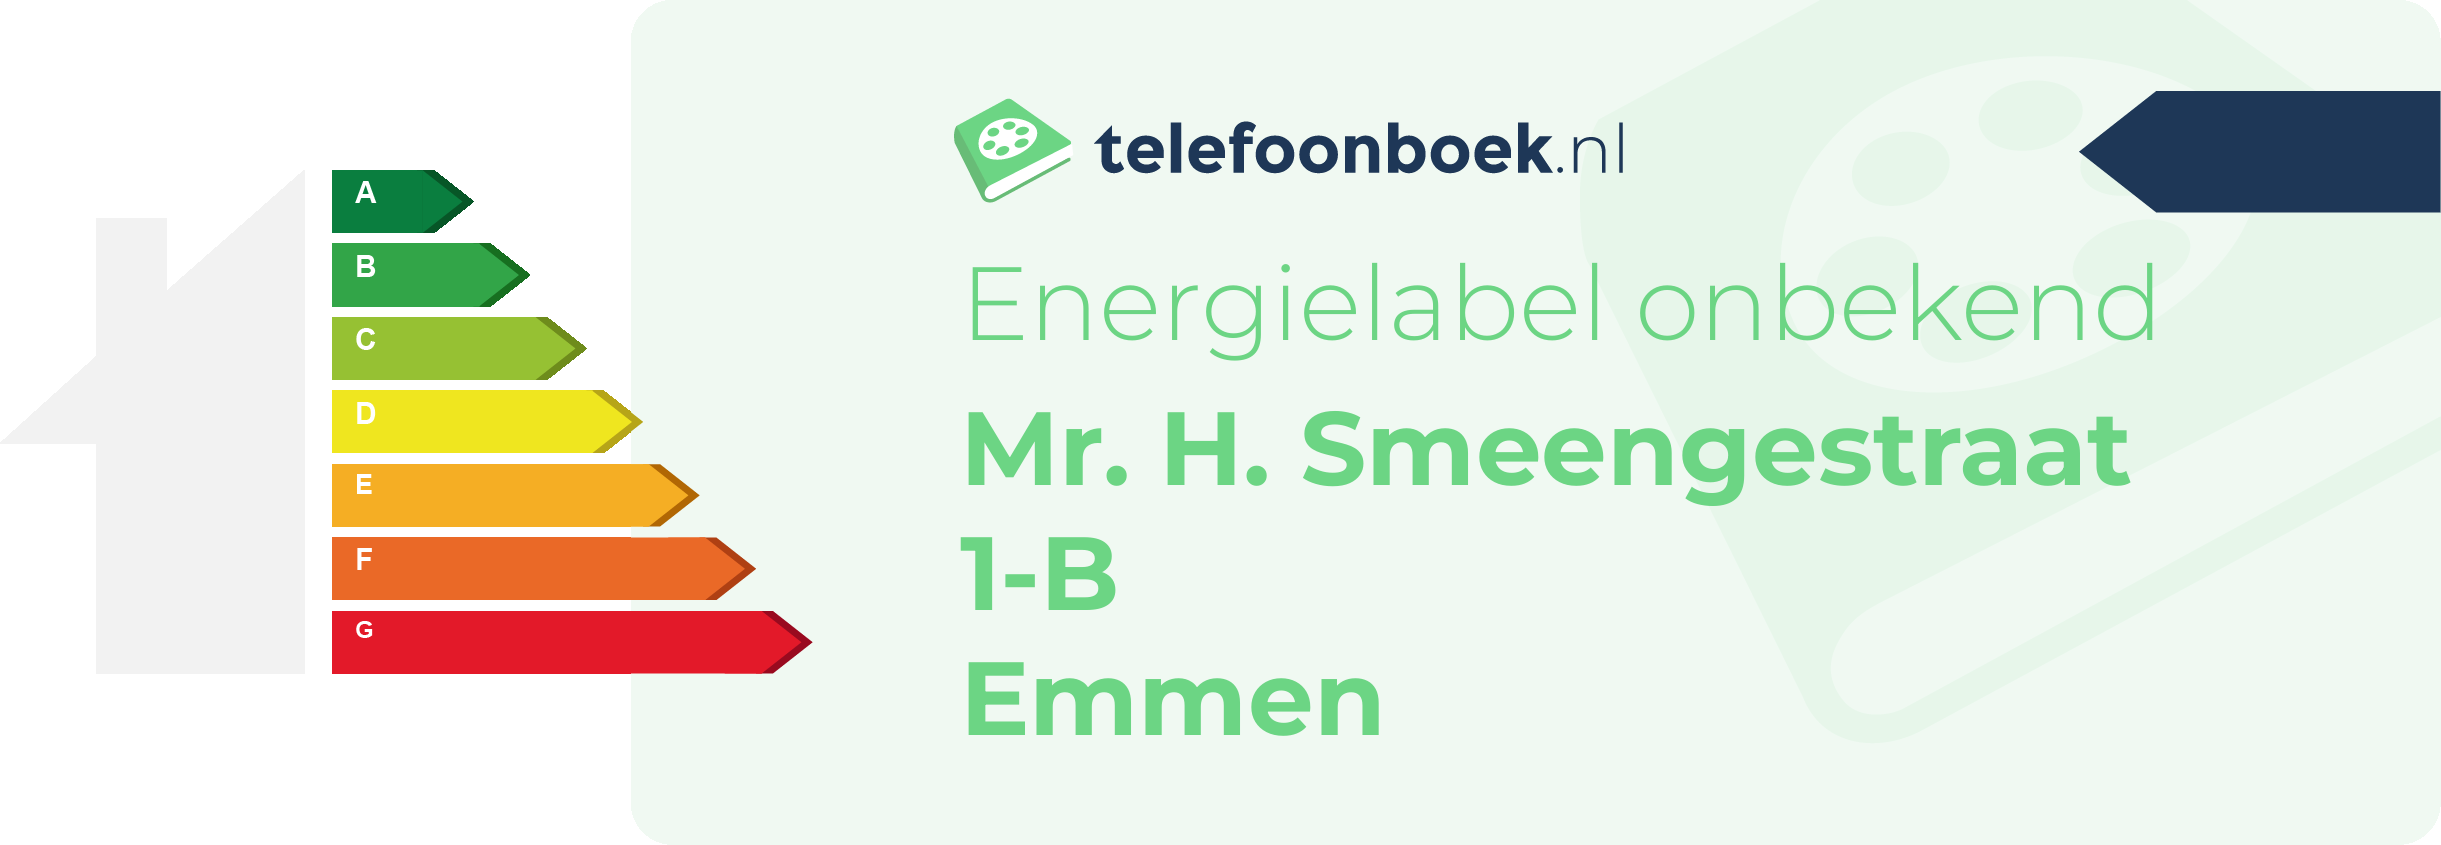 Energielabel Mr. H. Smeengestraat 1-B Emmen